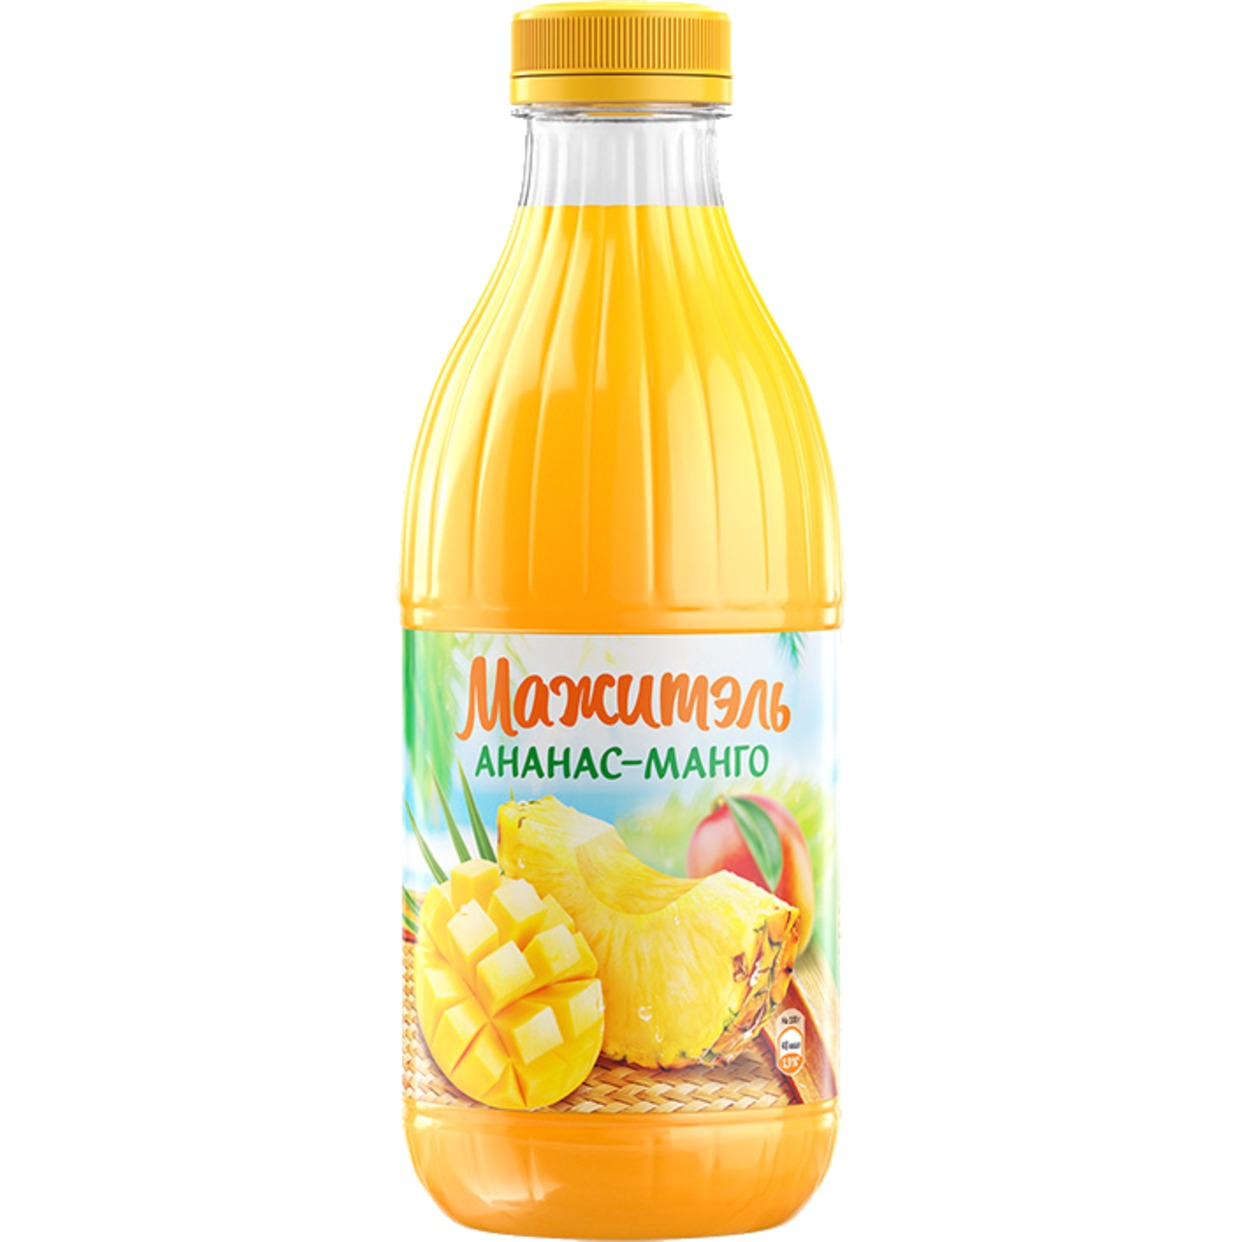 Напиток Мажитель J7, ананас-манго, 950 г по акции в Пятерочке